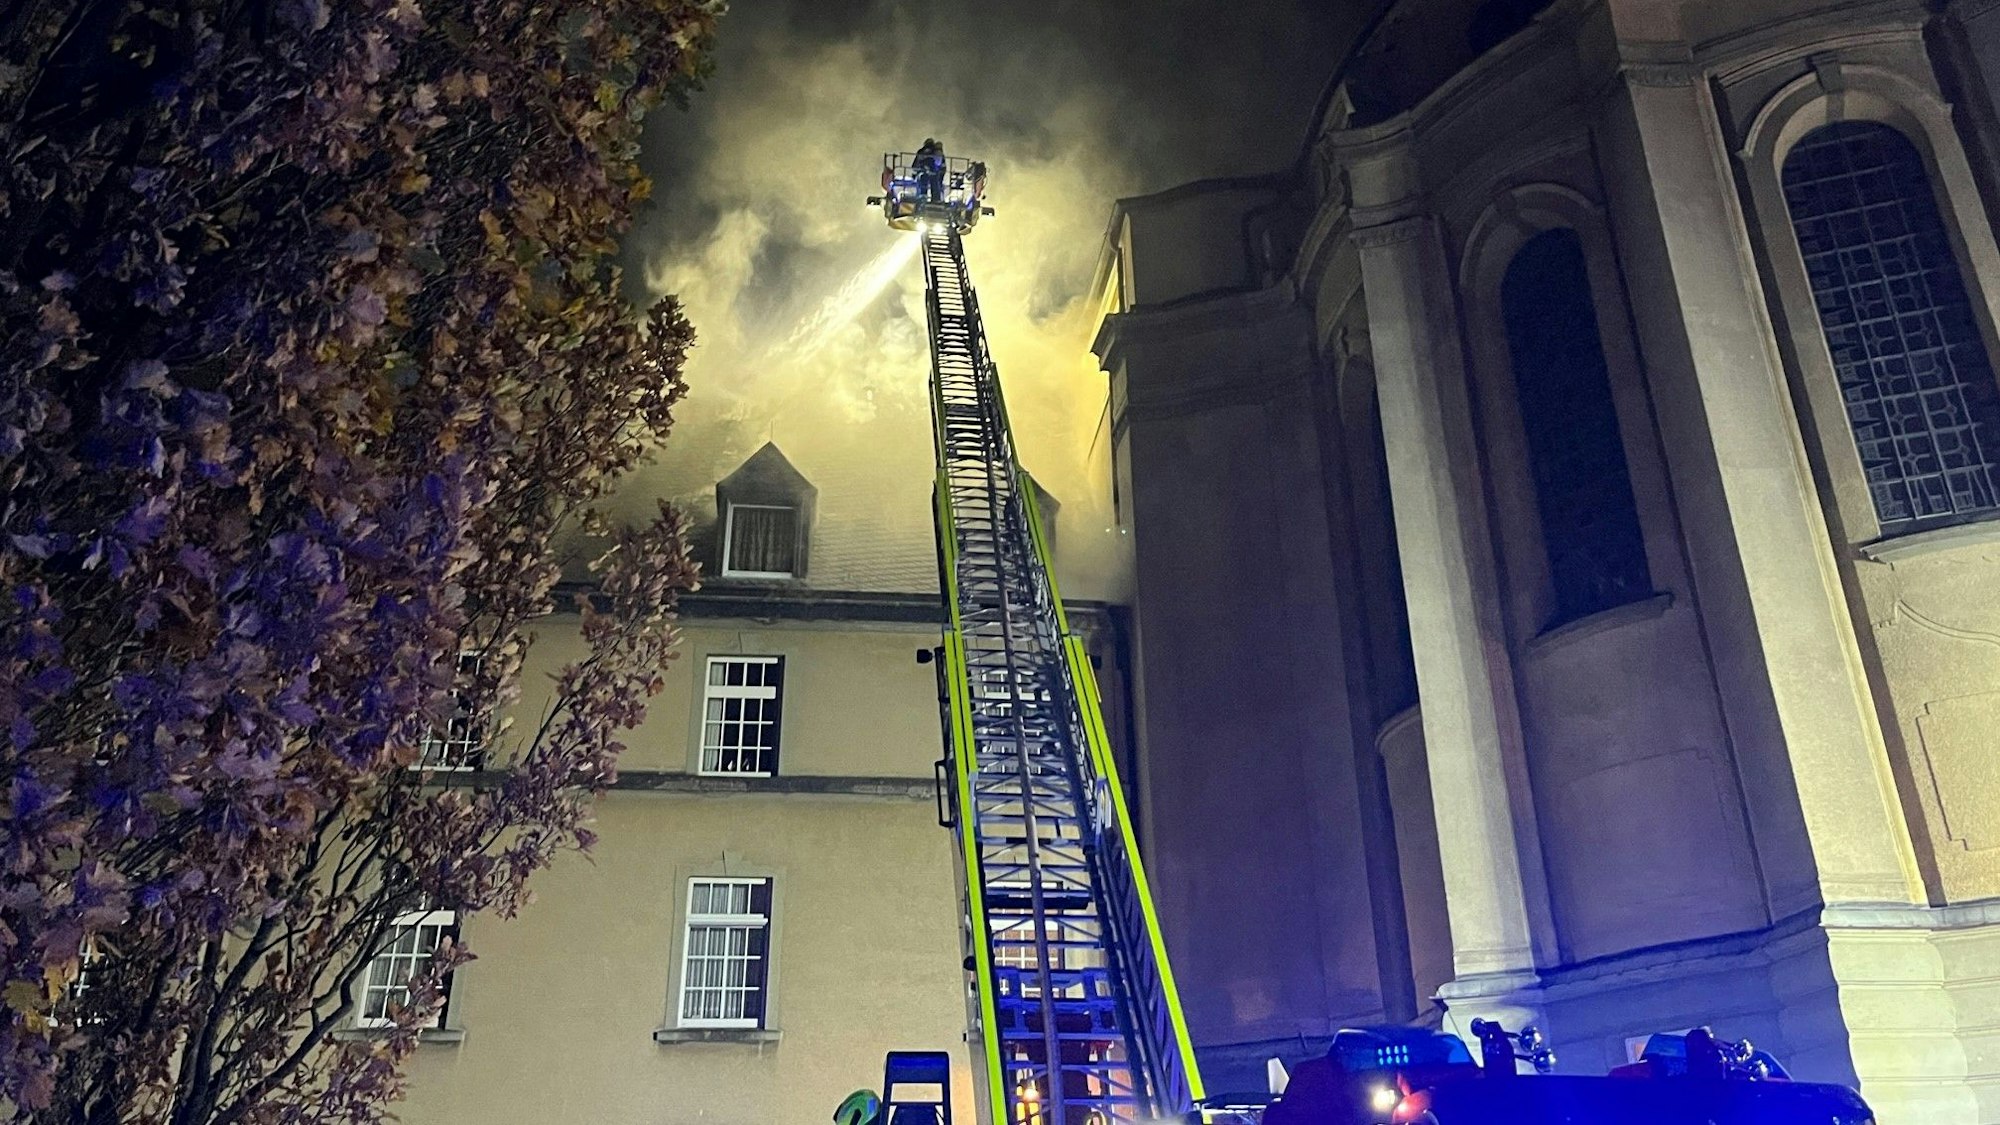 In eienm Gebäude der Steyler Missionare in Sankt Augustin brennt es im Dachgeschoss. Die Feuerwehr Sankt Augustin ist mit der Drehleiter im Einsatz und kämpft gegen die Fammen in dem historischen Gebäude. 